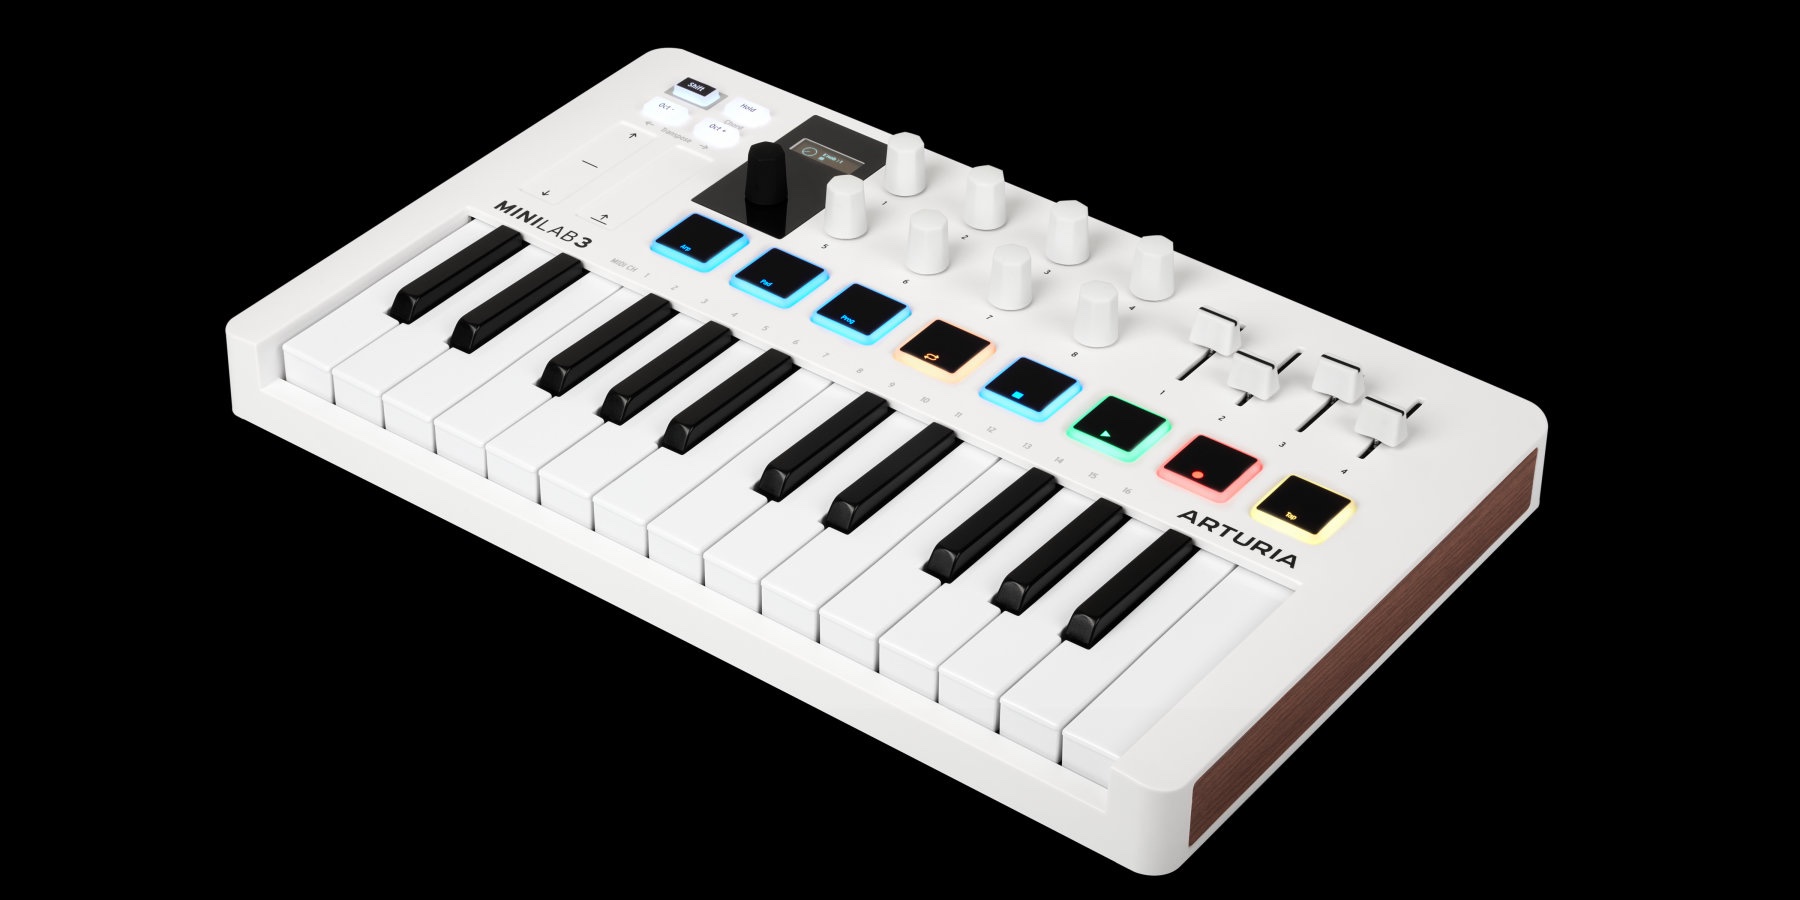 Arturia unveils revamped next-generation MiniLab 3 MIDI controller